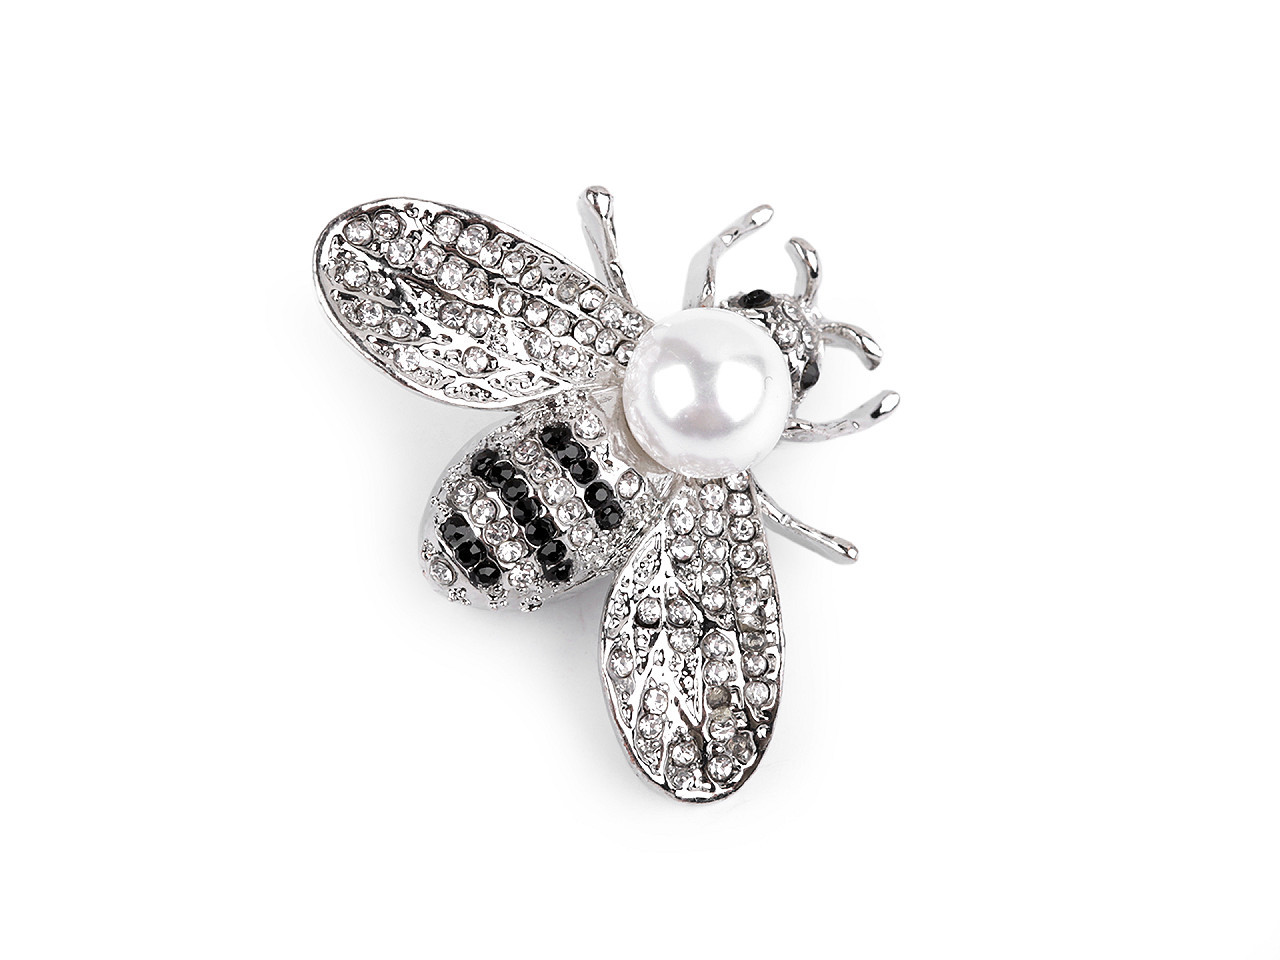 Brož s broušenými kamínky a perlou včela, barva 1 crystal platina